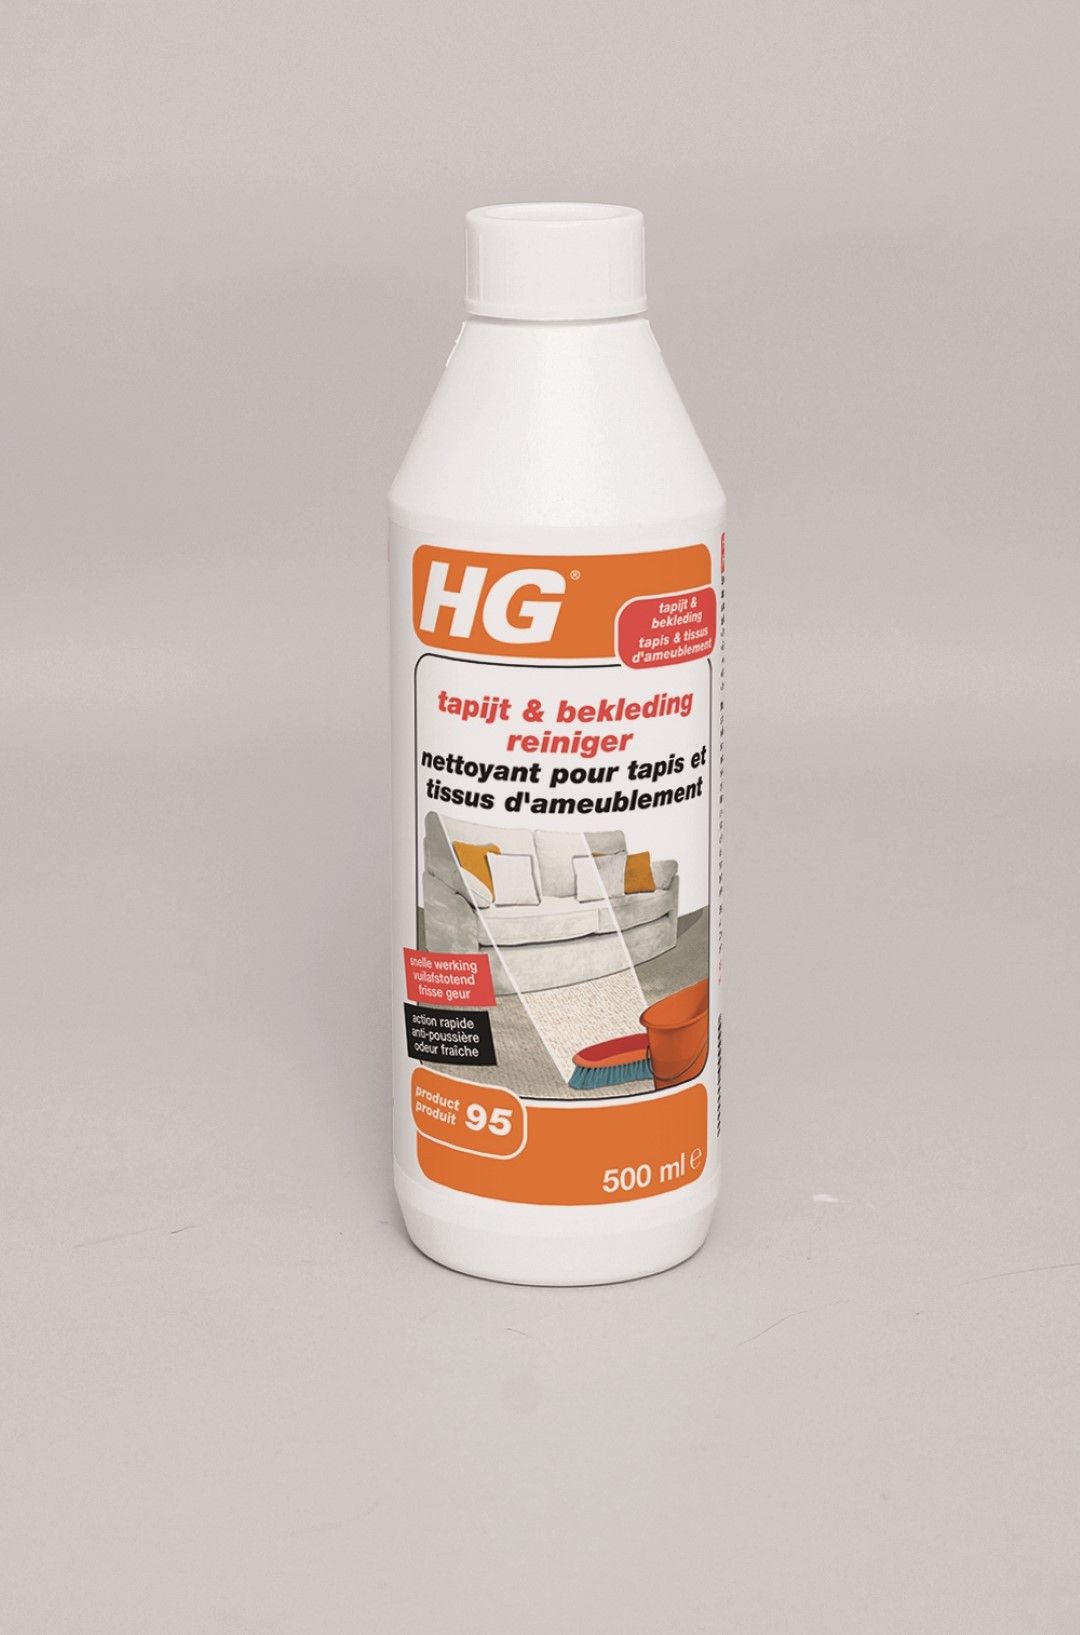 Nettoyant pour tapis et tissus d'ameublement HG 2 L